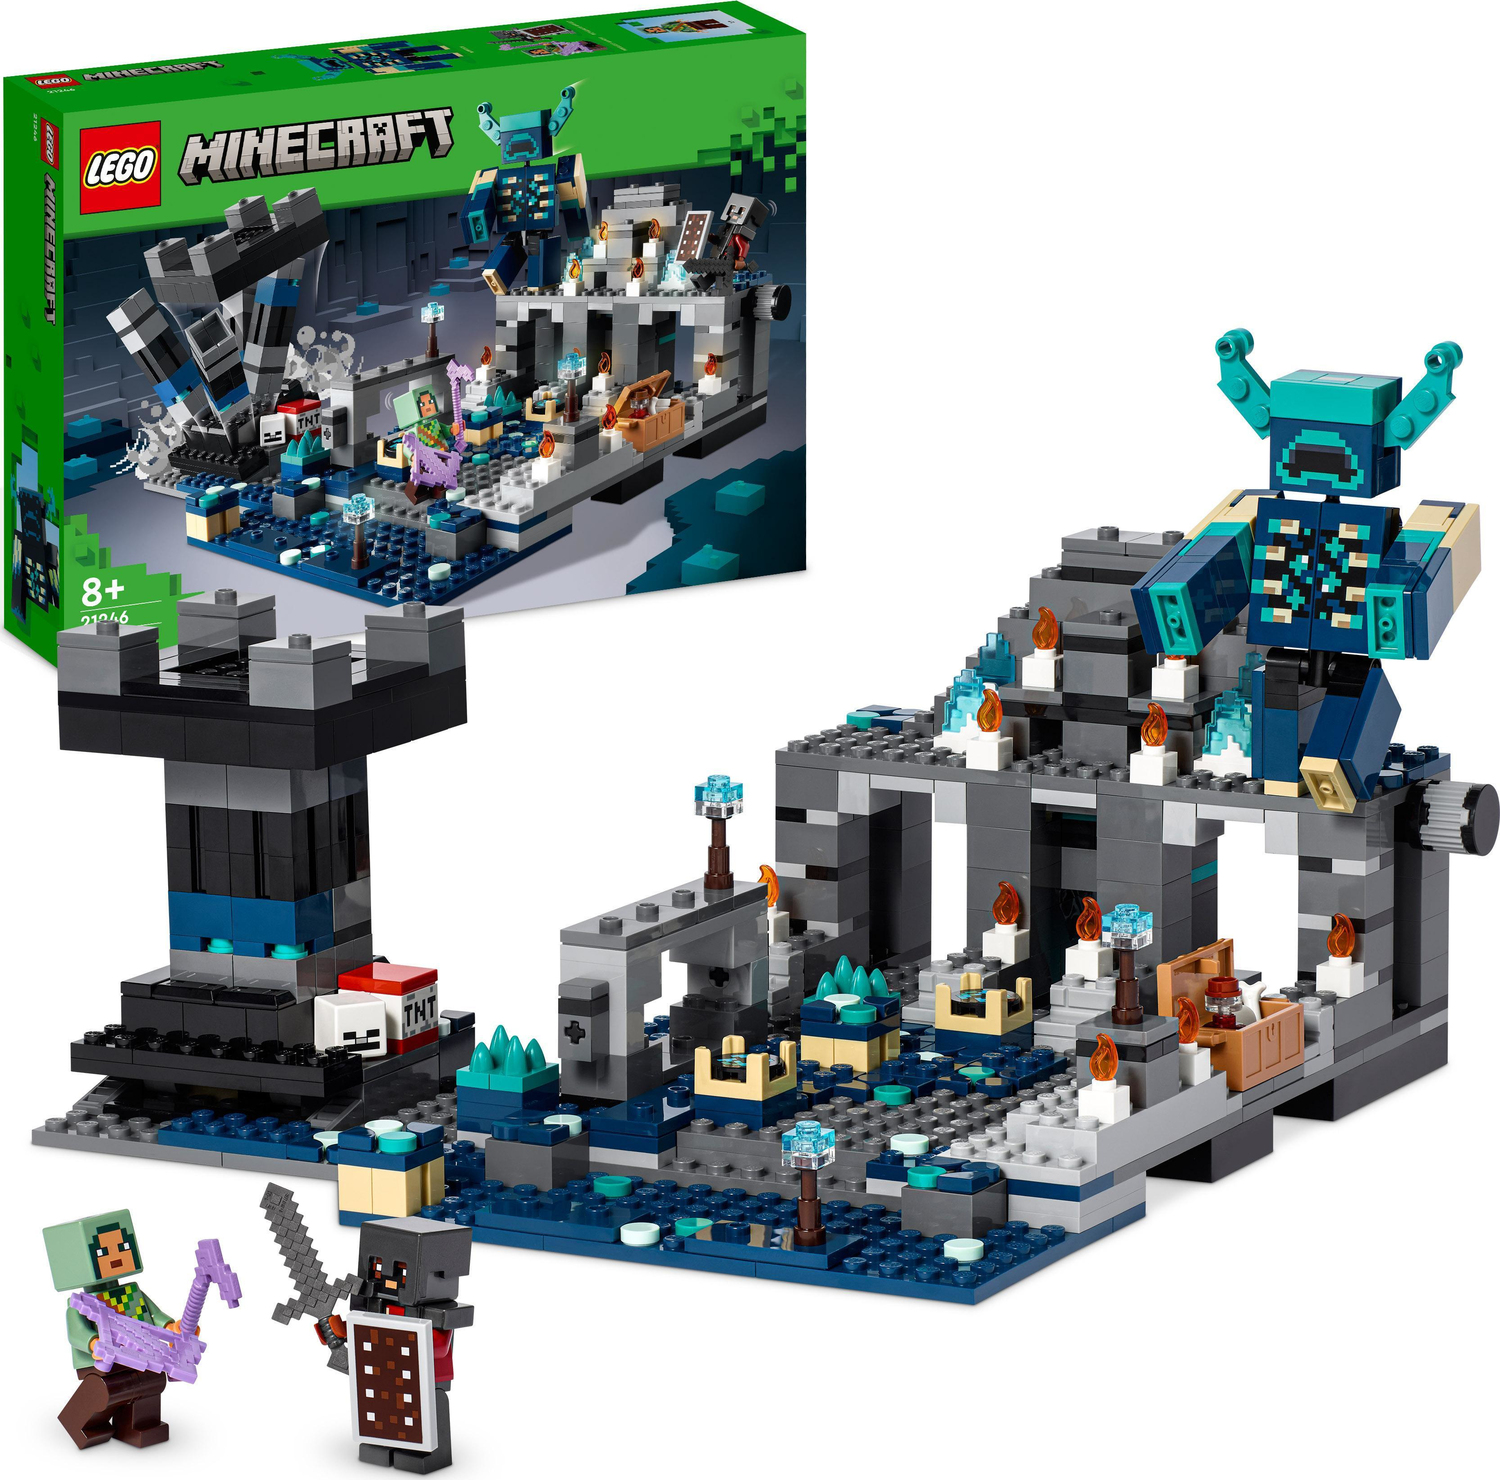 LEGO® Minecraft: The Deep Battle - The Box Hanover